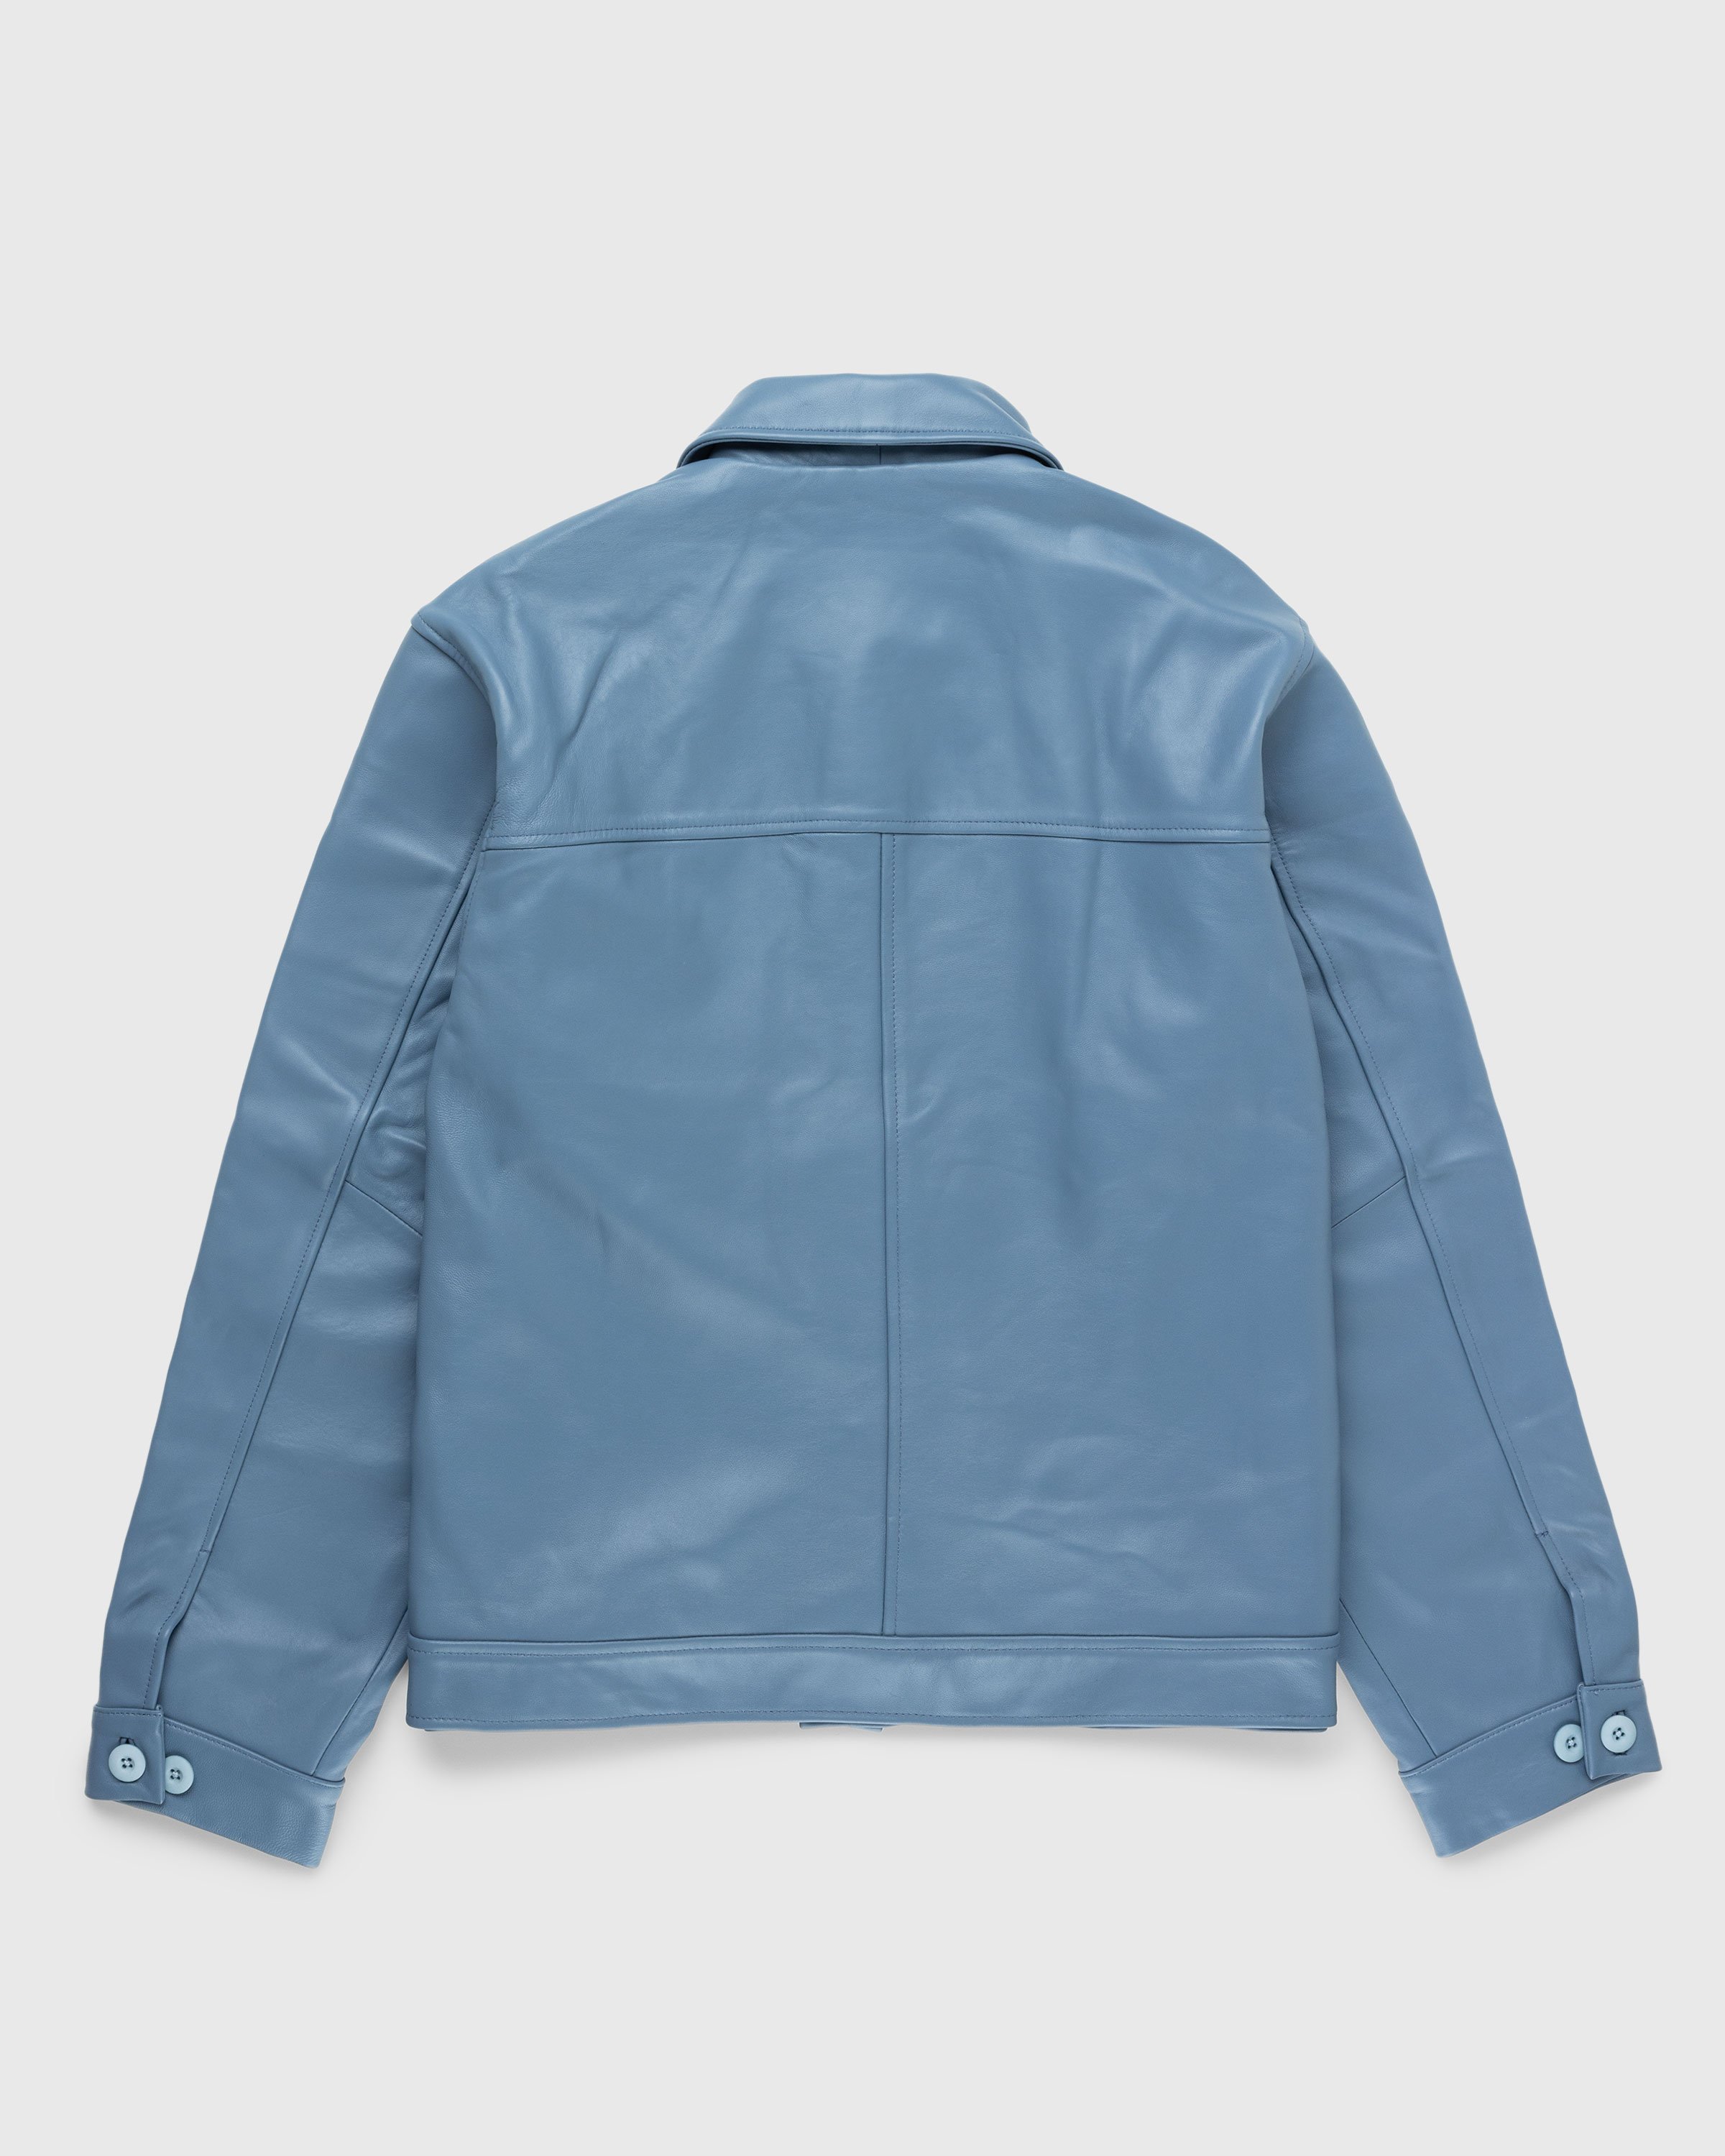 Highsnobiety HS05 - Leather Jacket Blue - Clothing - Blue - Image 2